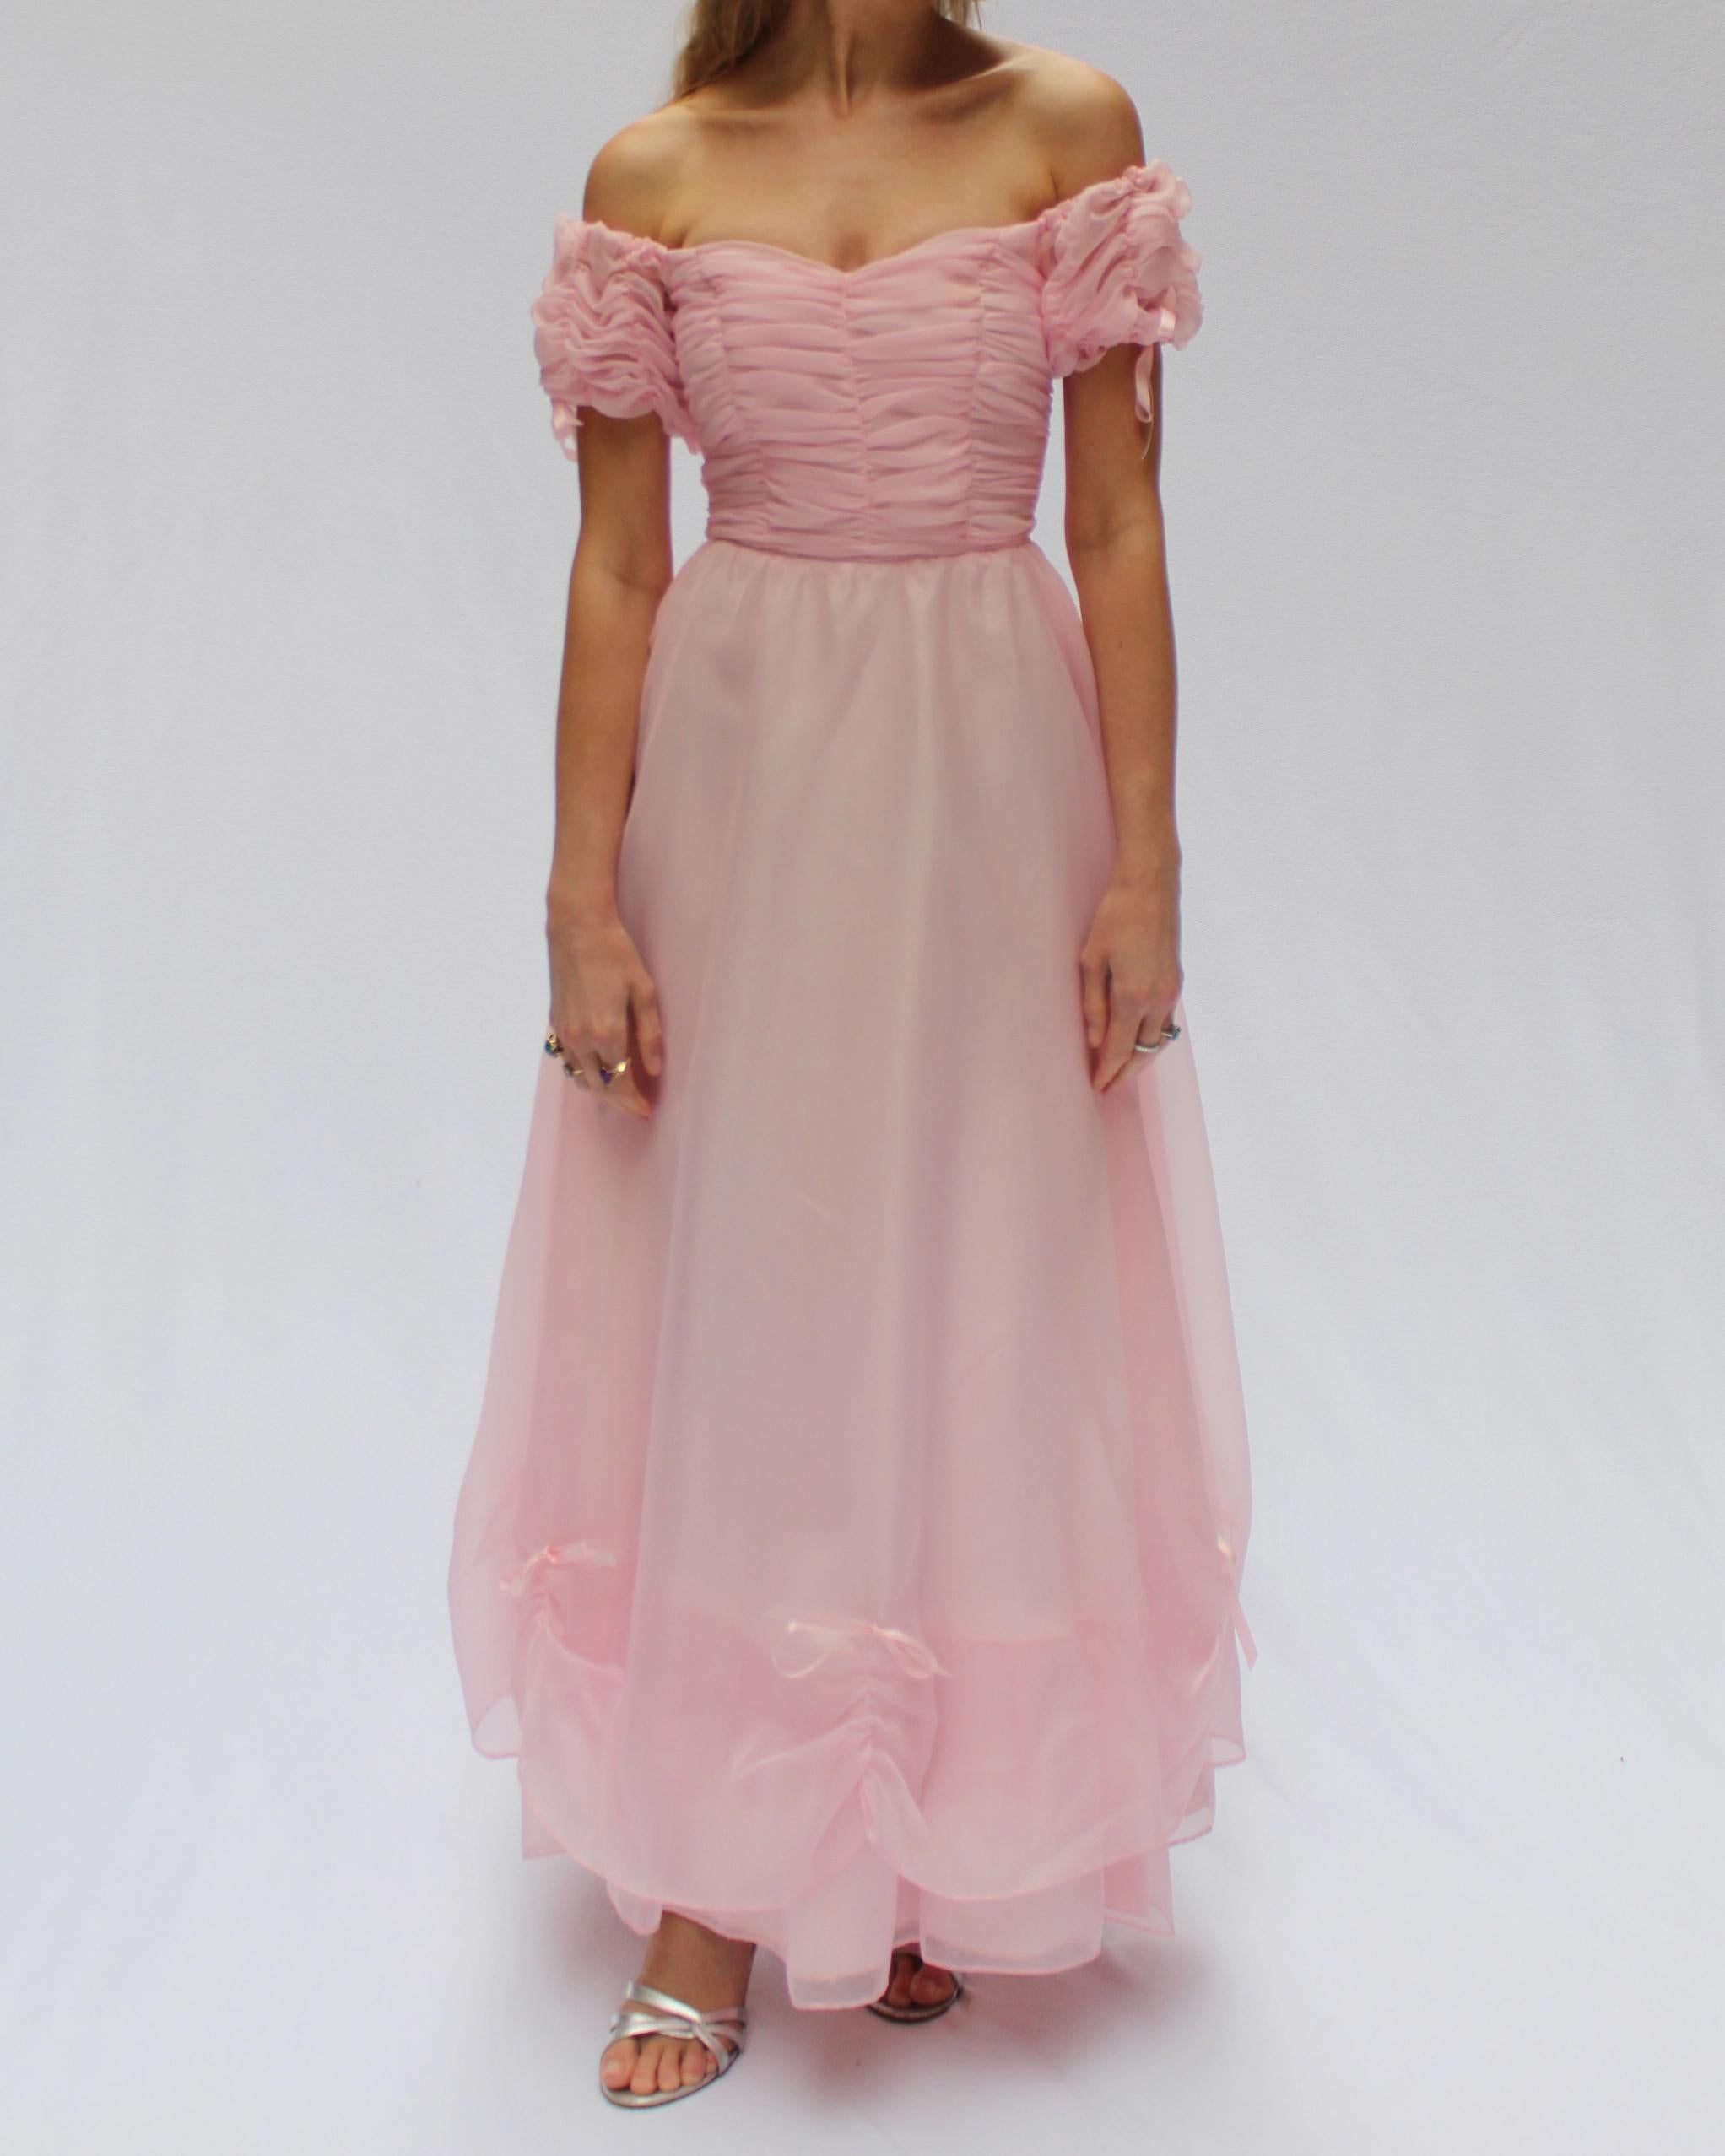 Vintage Off-the-Shoulder Tulle Princess Dress For Sale 2